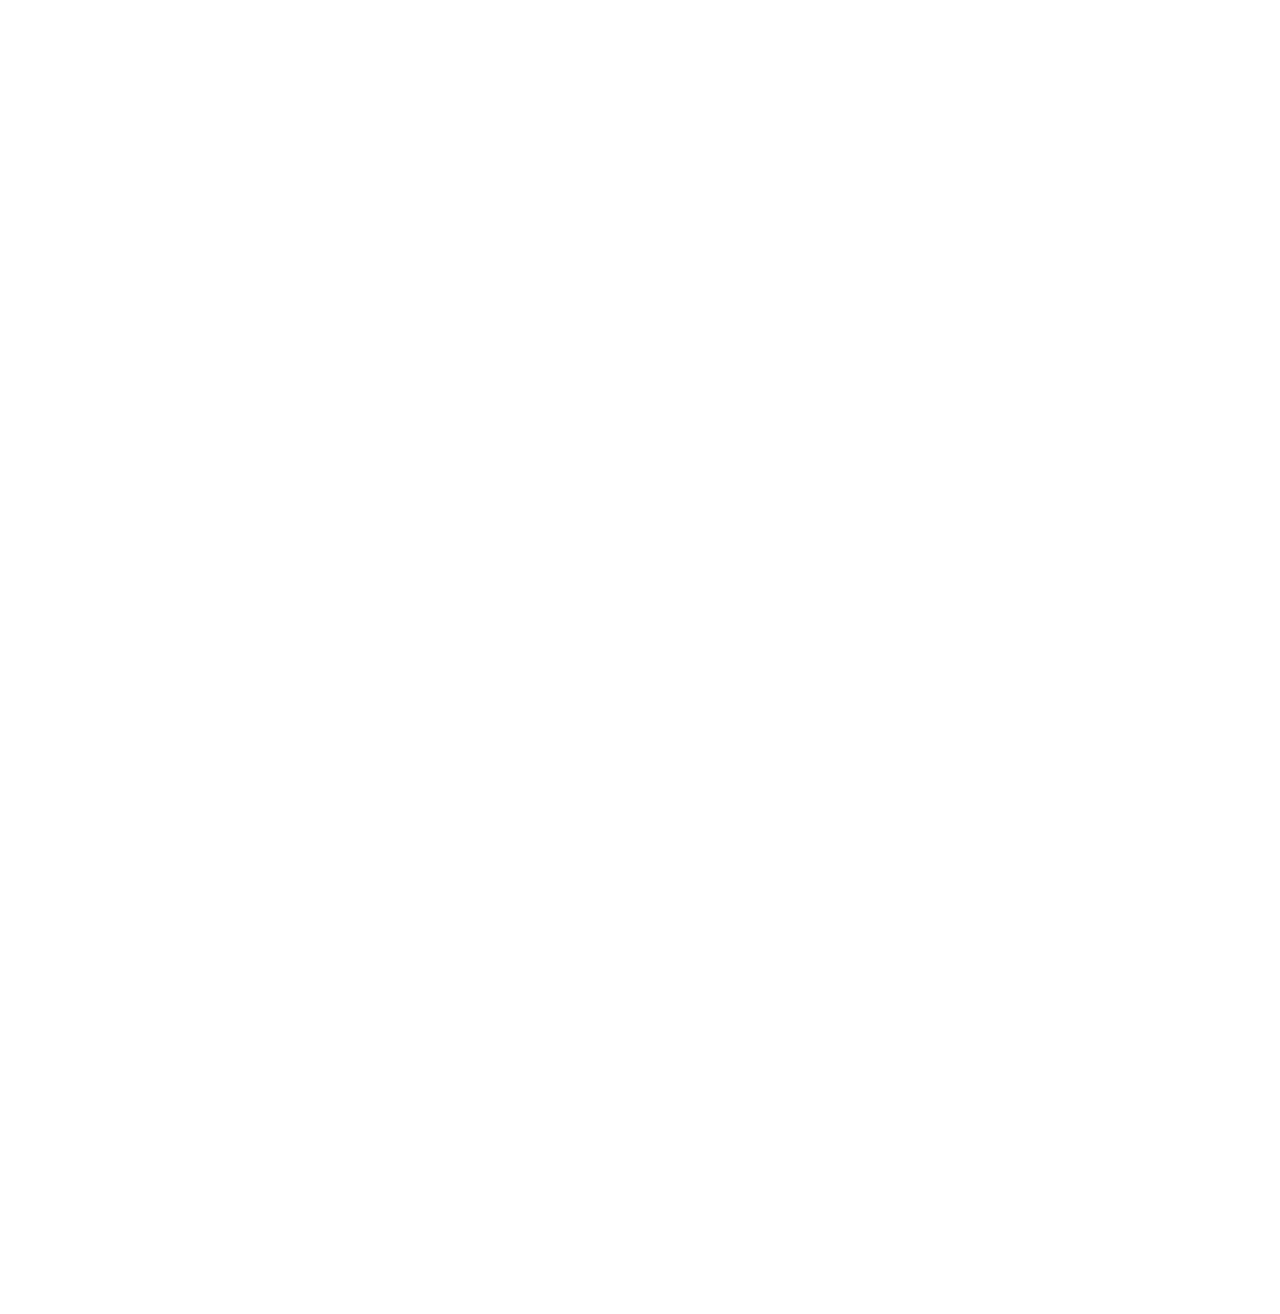 Royal VIP Yachts